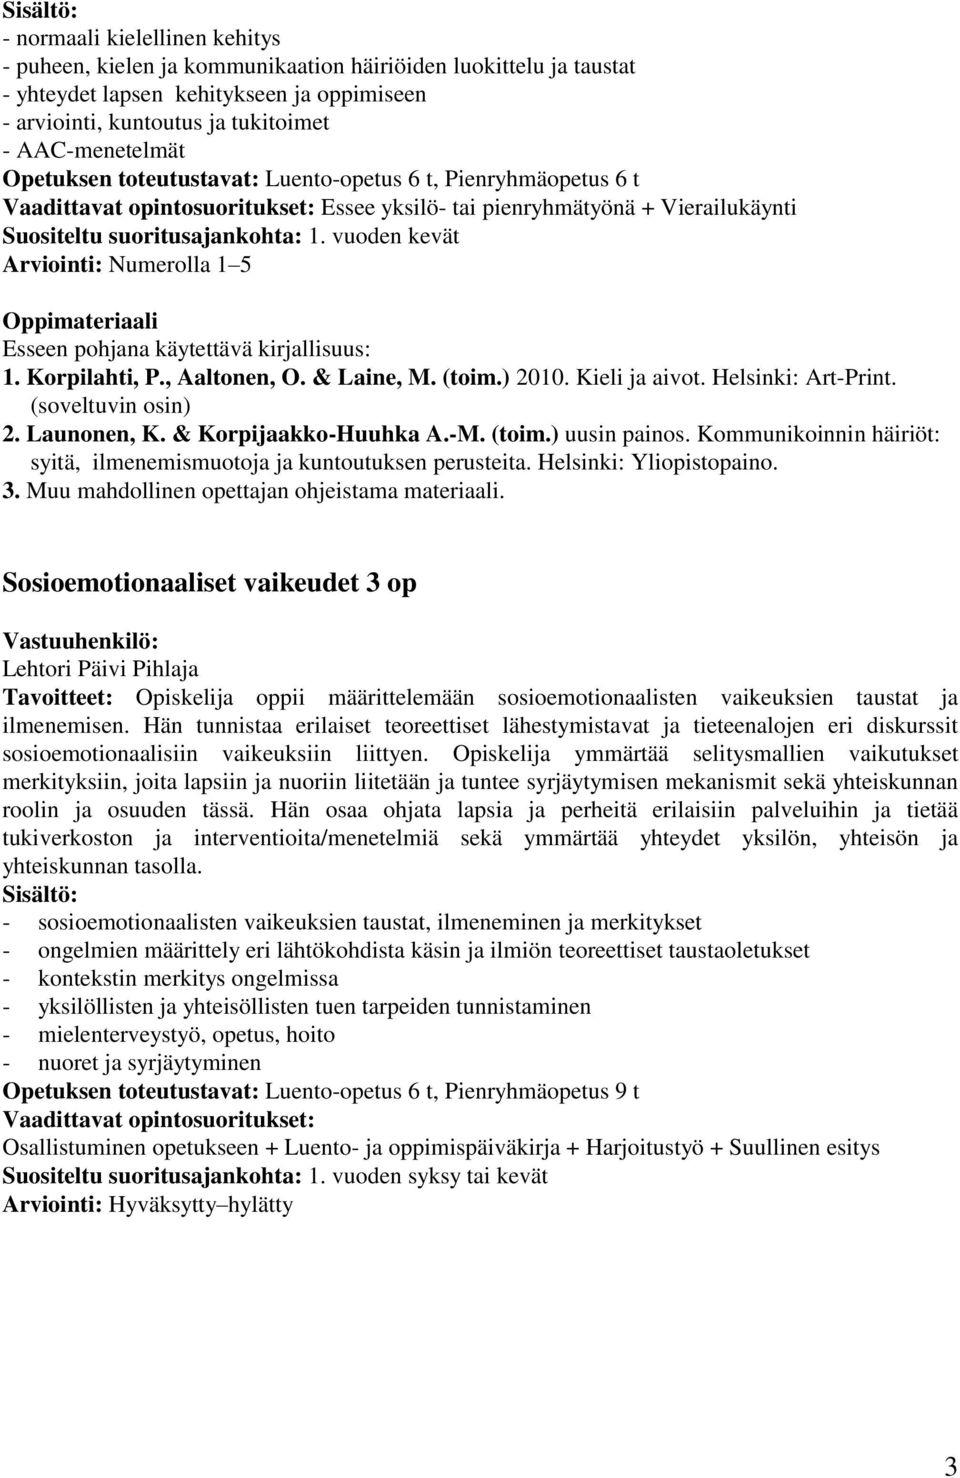 & Laine, M. (toim.) 2010. Kieli ja aivot. Helsinki: Art-Print. (soveltuvin osin) 2. Launonen, K. & Korpijaakko-Huuhka A.-M. (toim.) uusin painos.